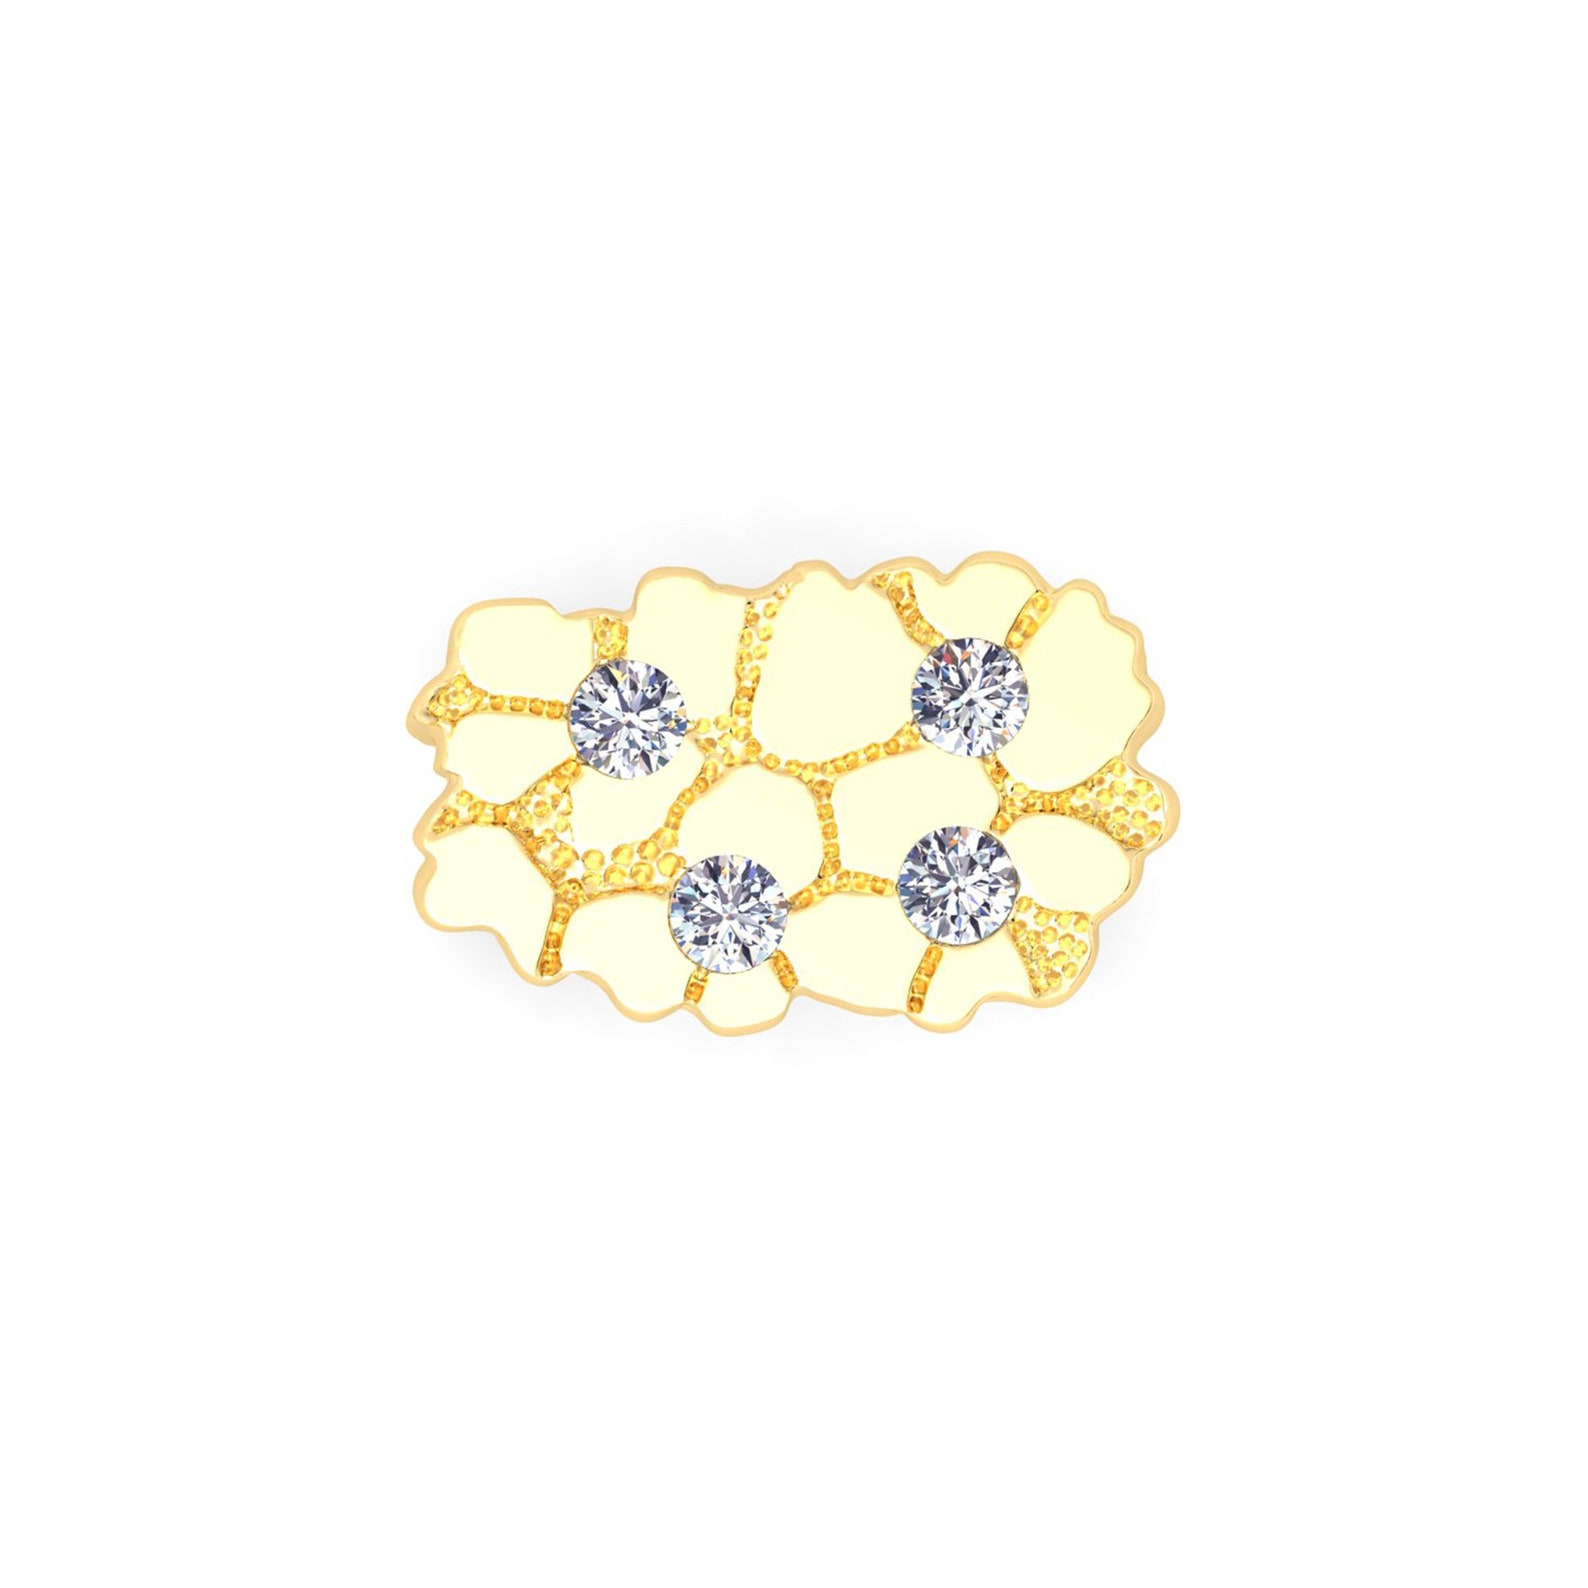 Solid Gold Nugget Ring Diamonds 18 Karat,10k,14k Yellow White Cluster ...